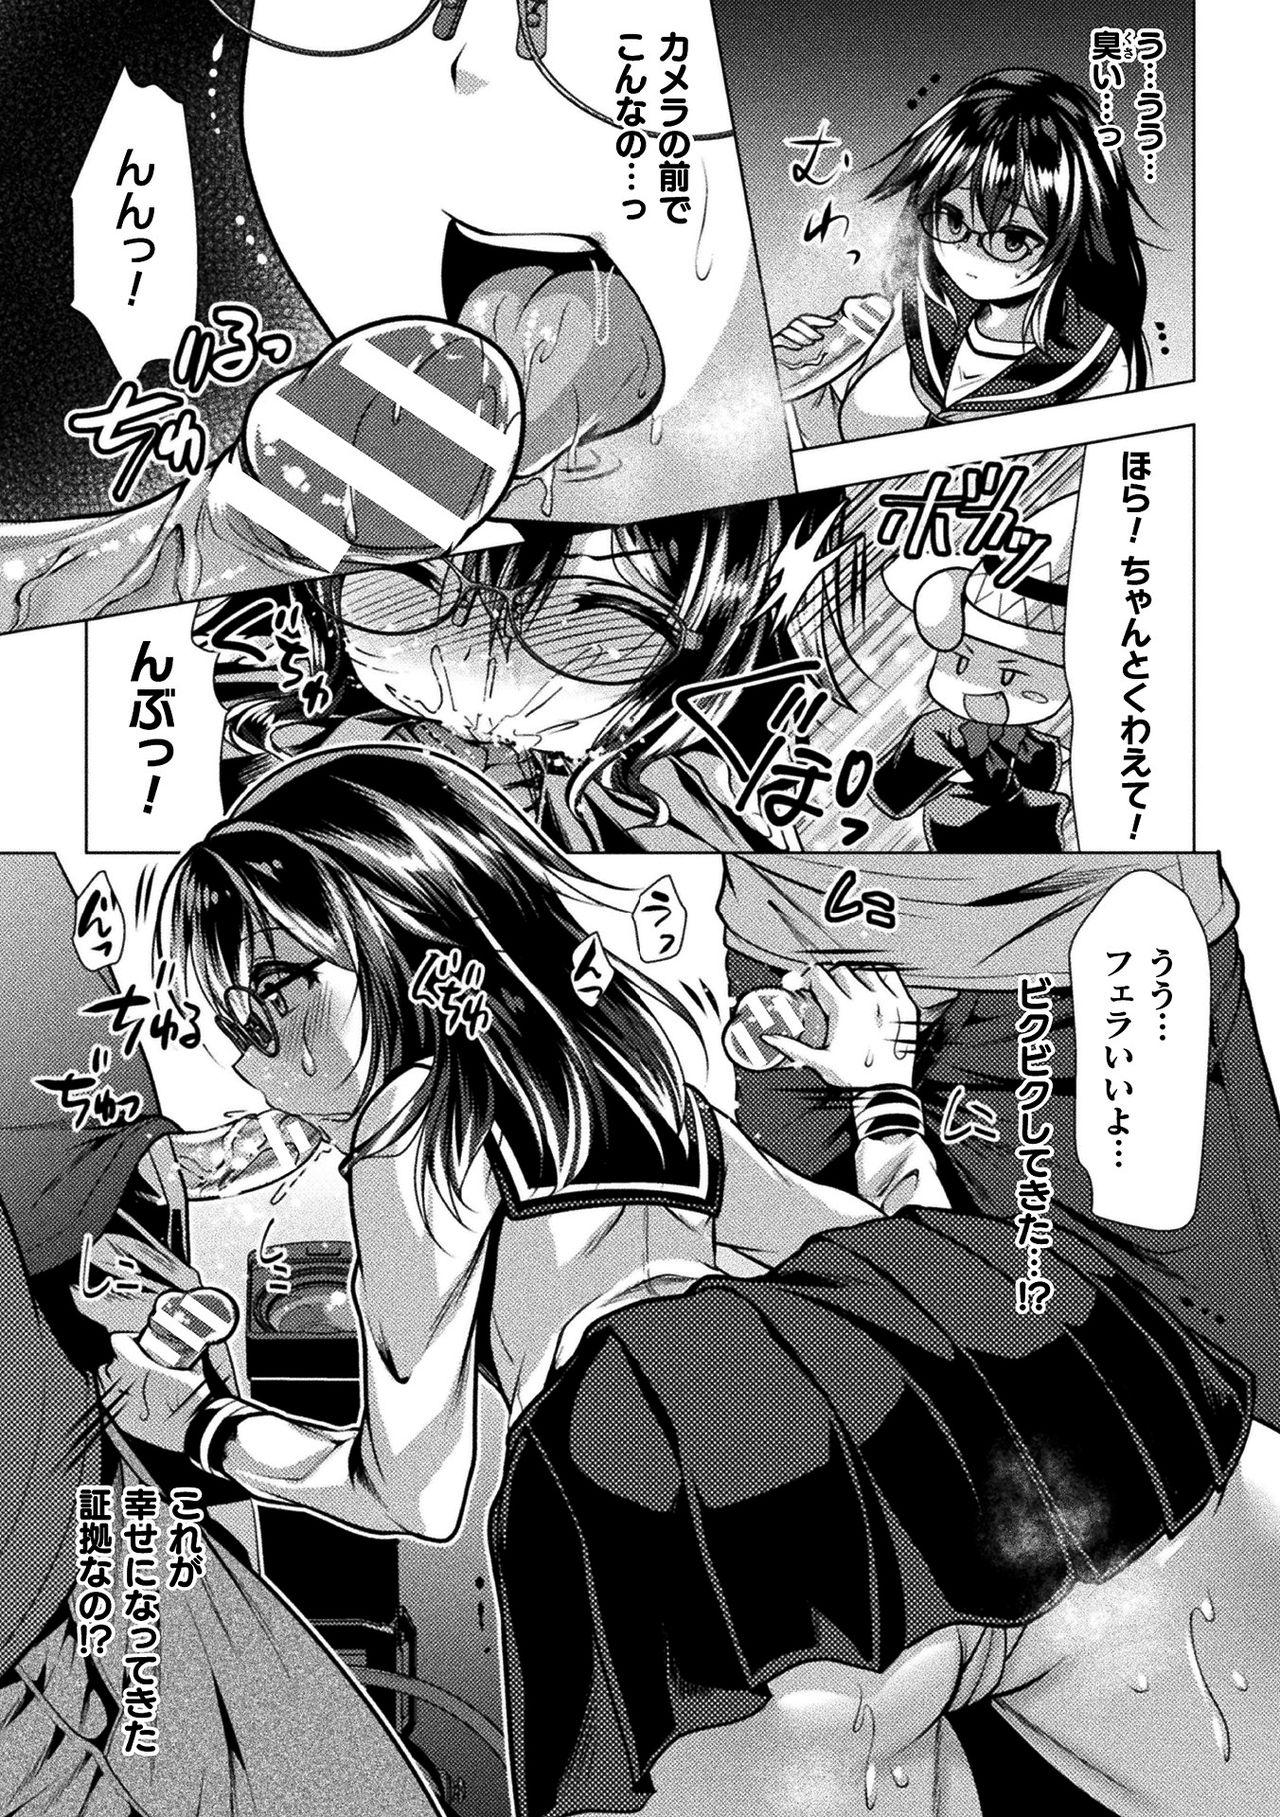 2D Comic Magazine Henshin Heroine Pakopako AV Debut Vol. 1 48